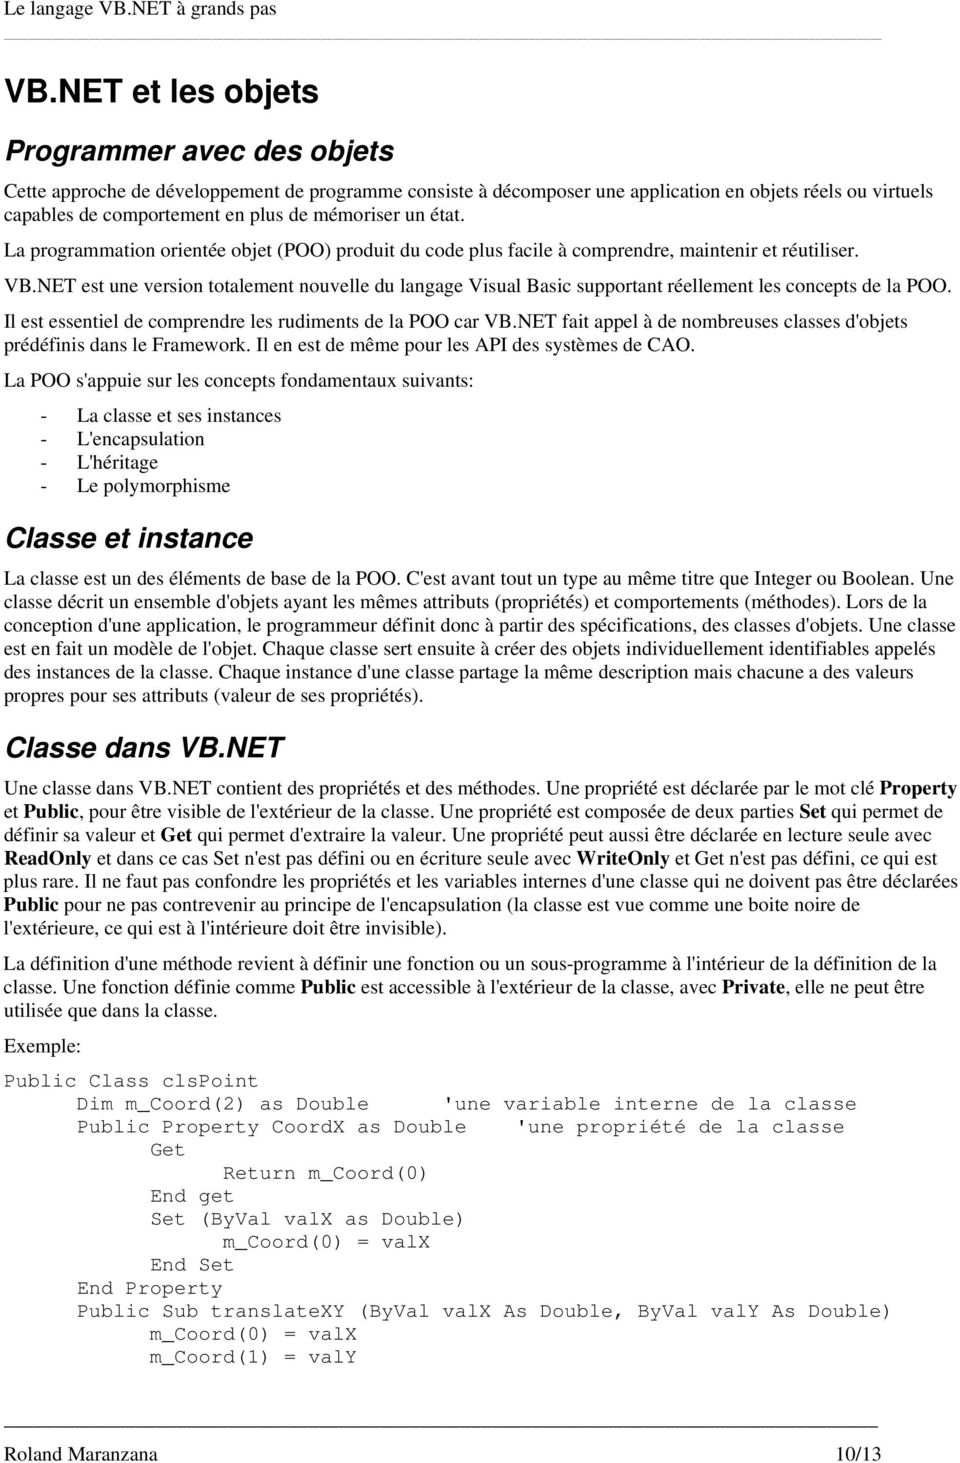 NET est une version totalement nouvelle du langage Visual Basic supportant réellement les concepts de la POO. Il est essentiel de comprendre les rudiments de la POO car VB.